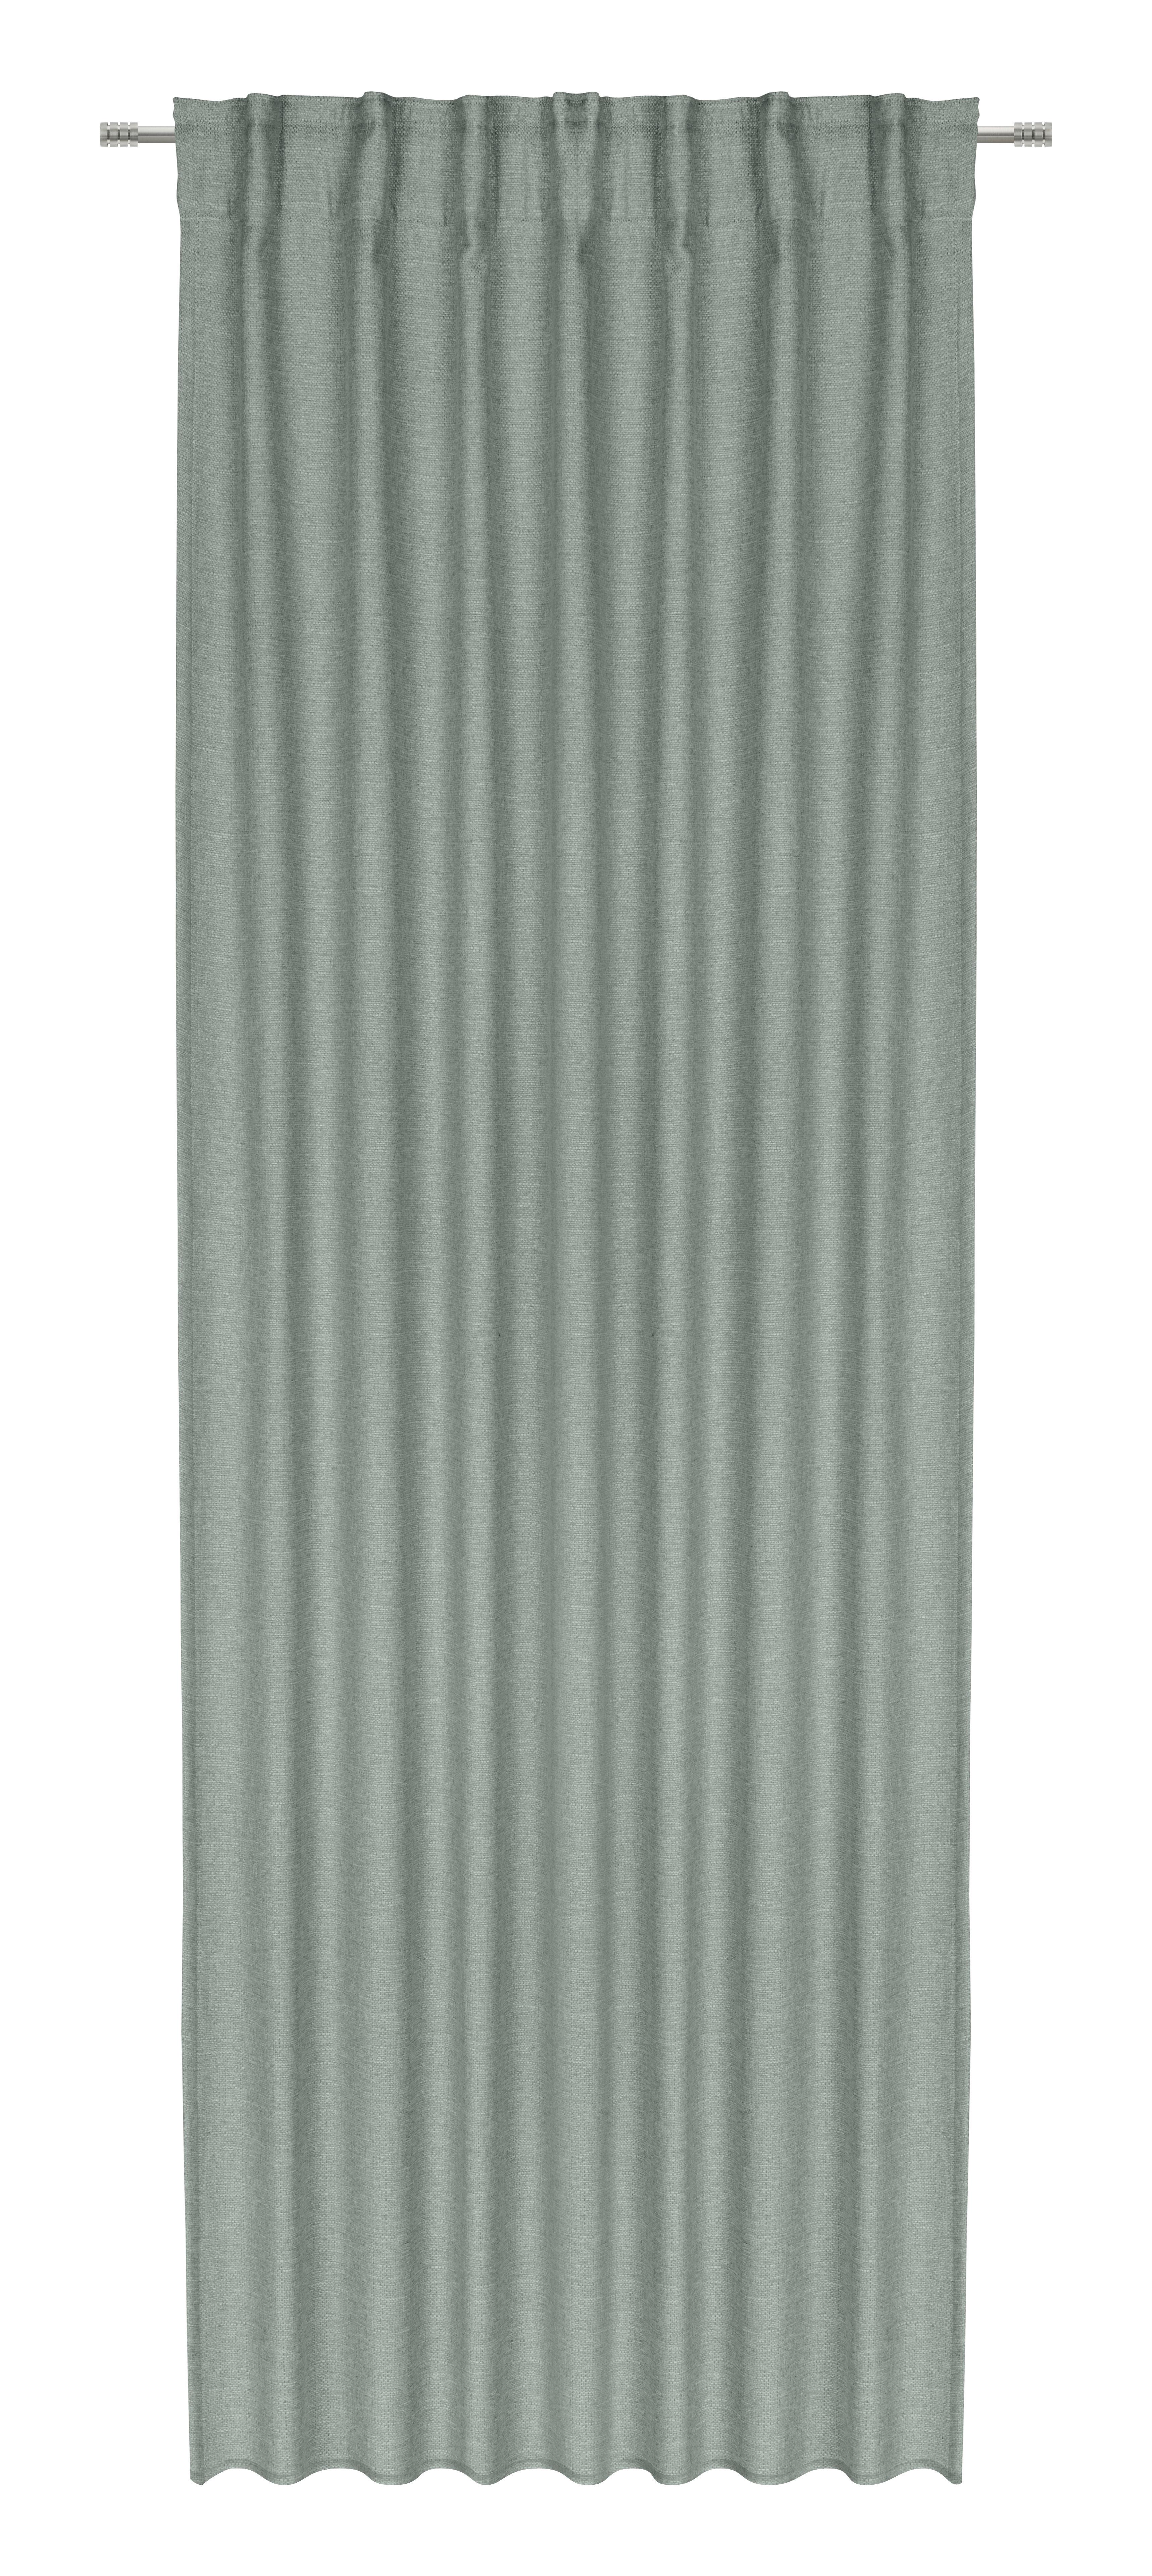 Gotova Zavjesa Alfi  135/255cm - zelena, Konventionell, tekstil (135/255cm) - Modern Living